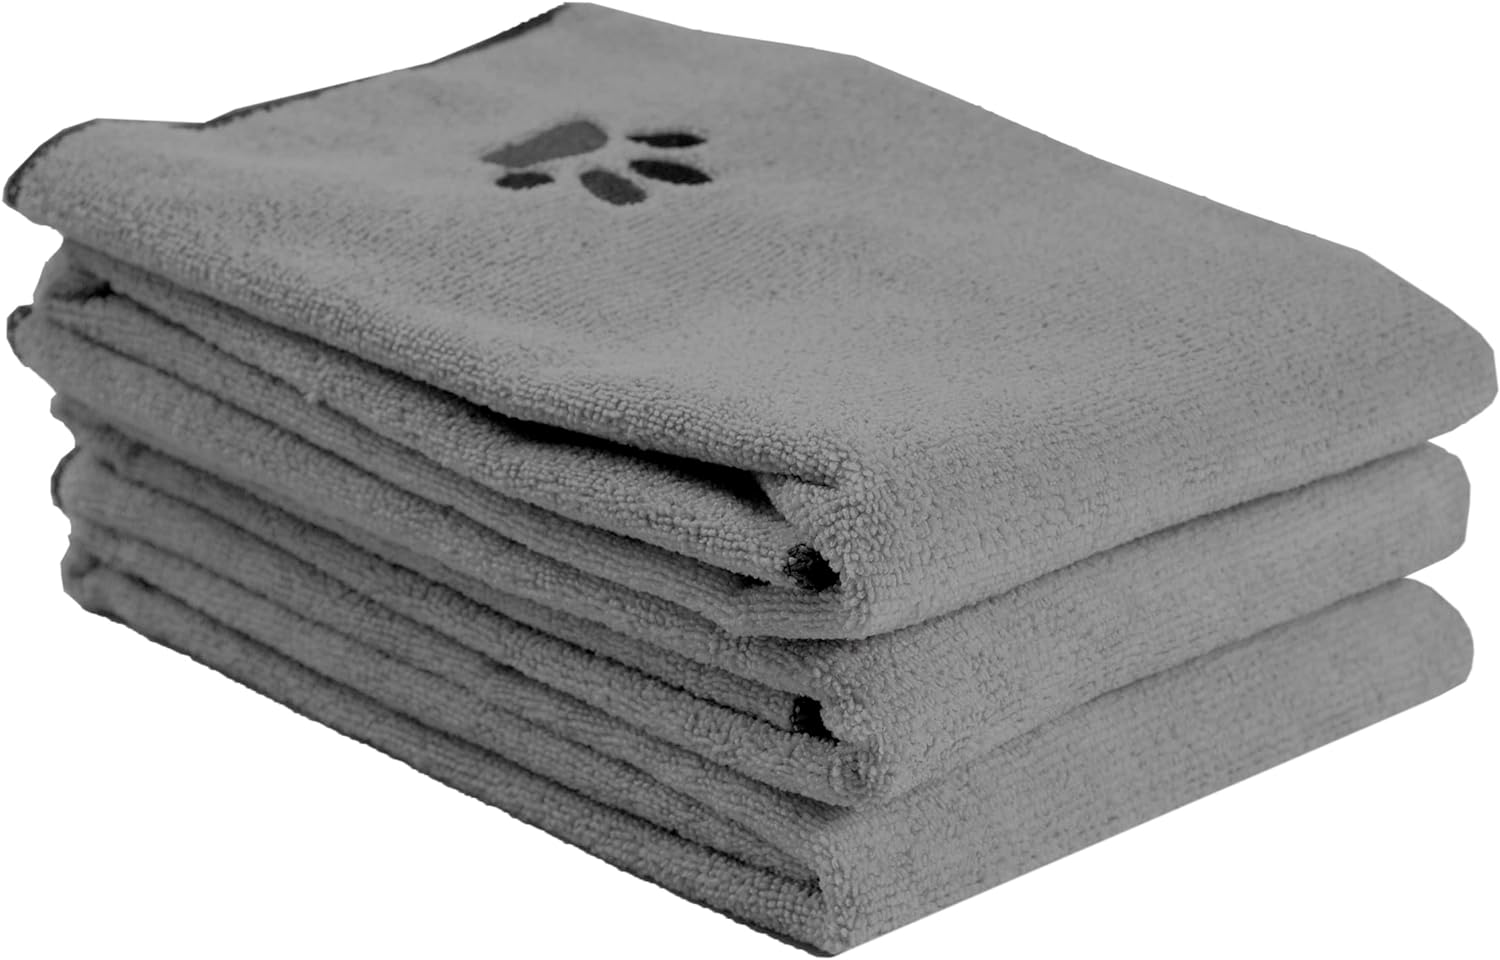 Ritz Premium Embroidered Microfiber Pet Towel